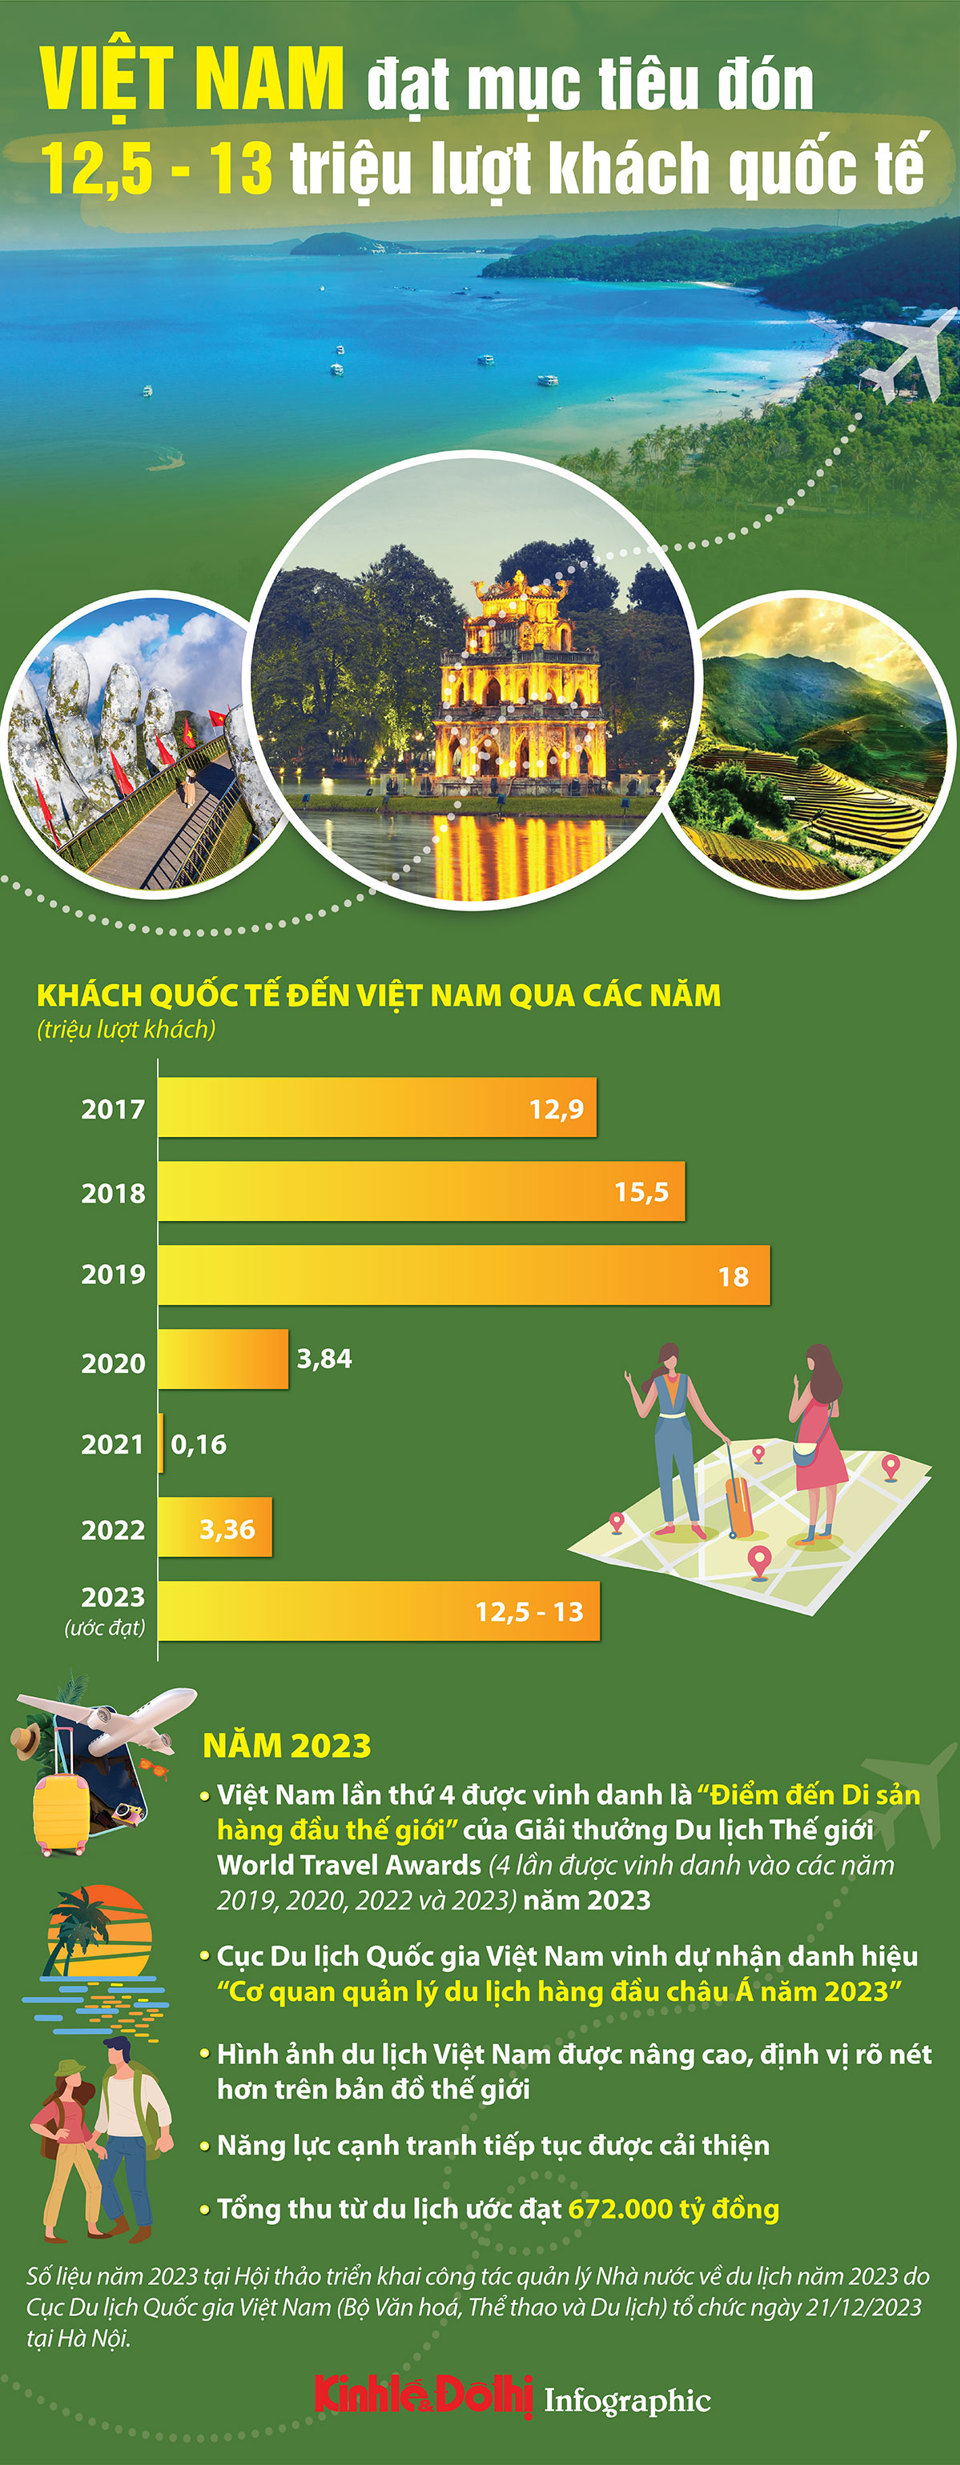 Du lịch Việt Nam đón 12,5 - 13 triệu lượt khách quốc tế - Ảnh 1